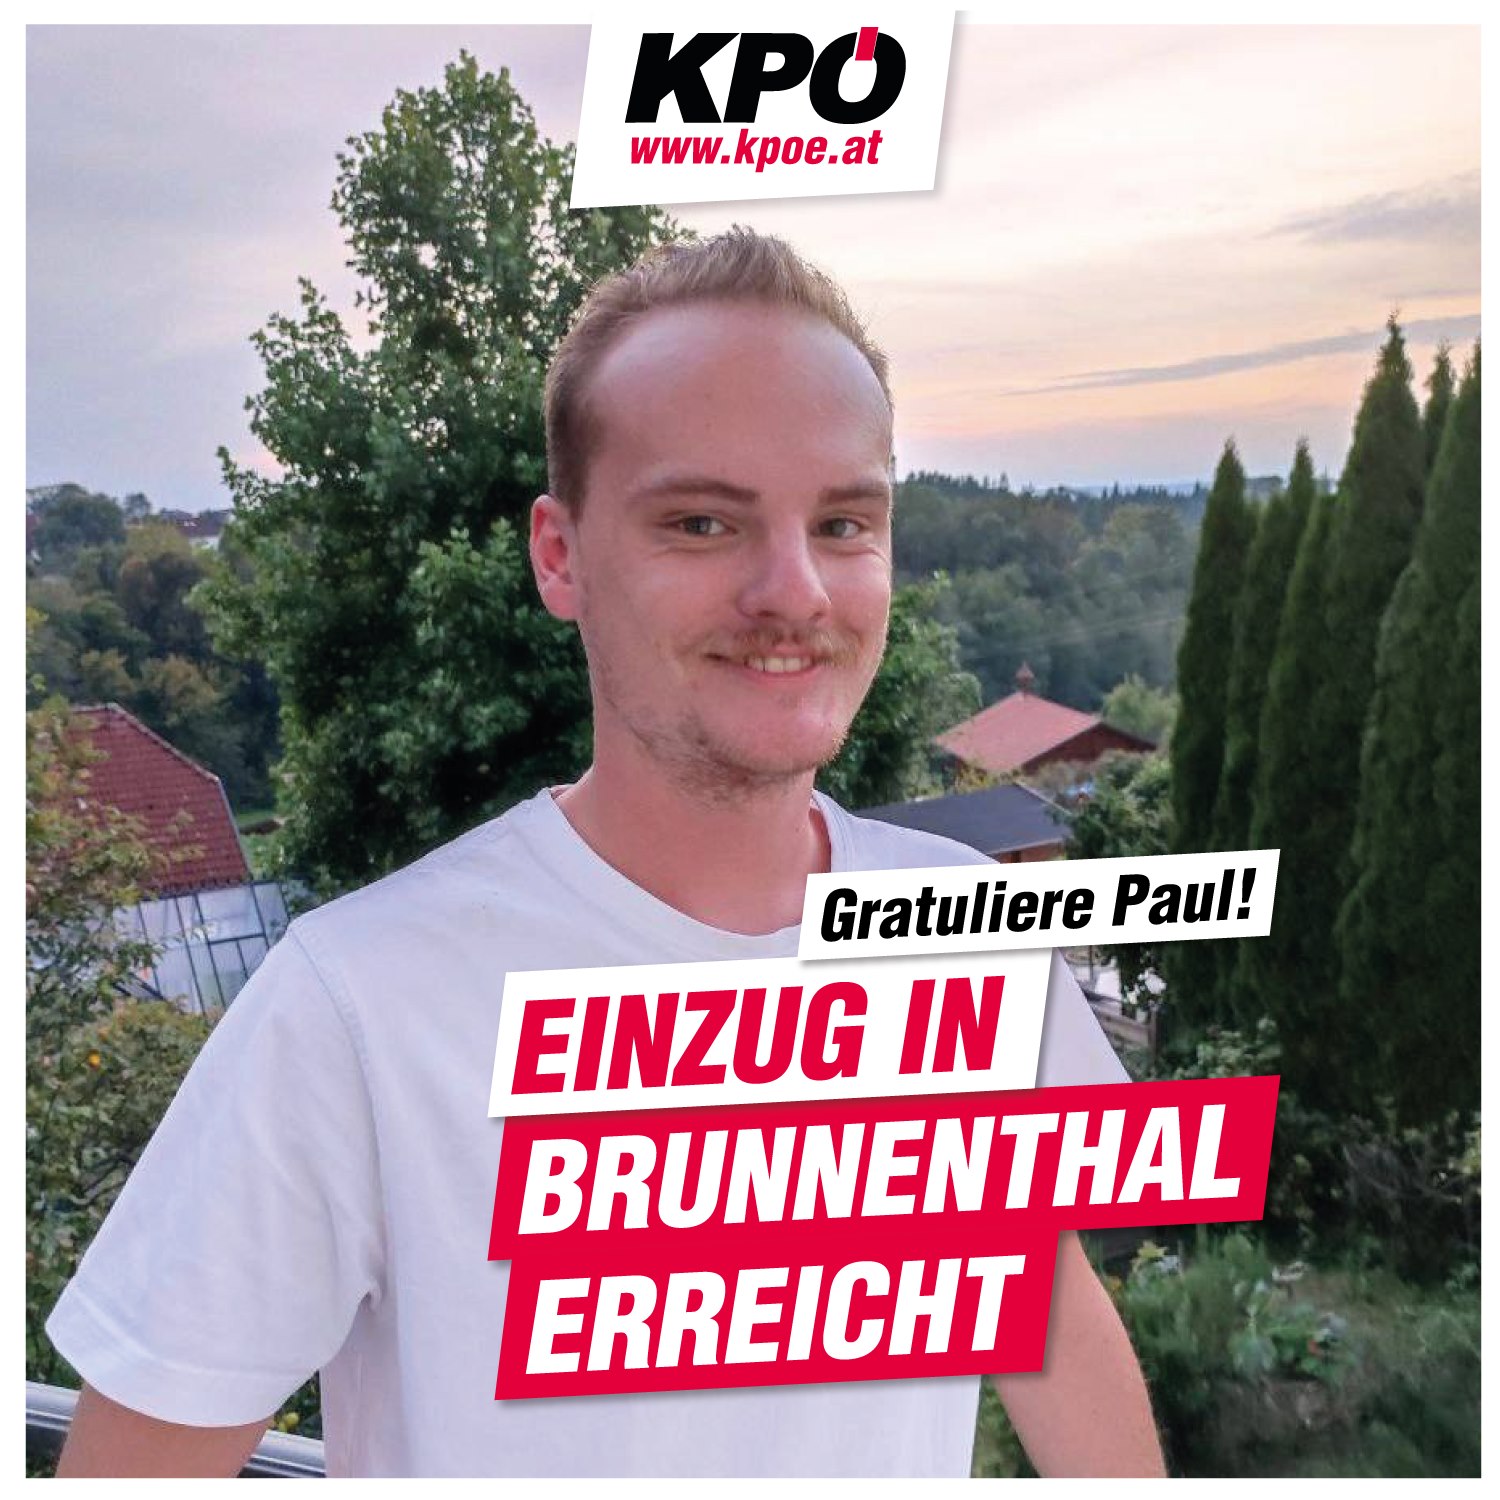 Percée du Parti Communiste d'Autriche (KPÖ) à Brunnenthal